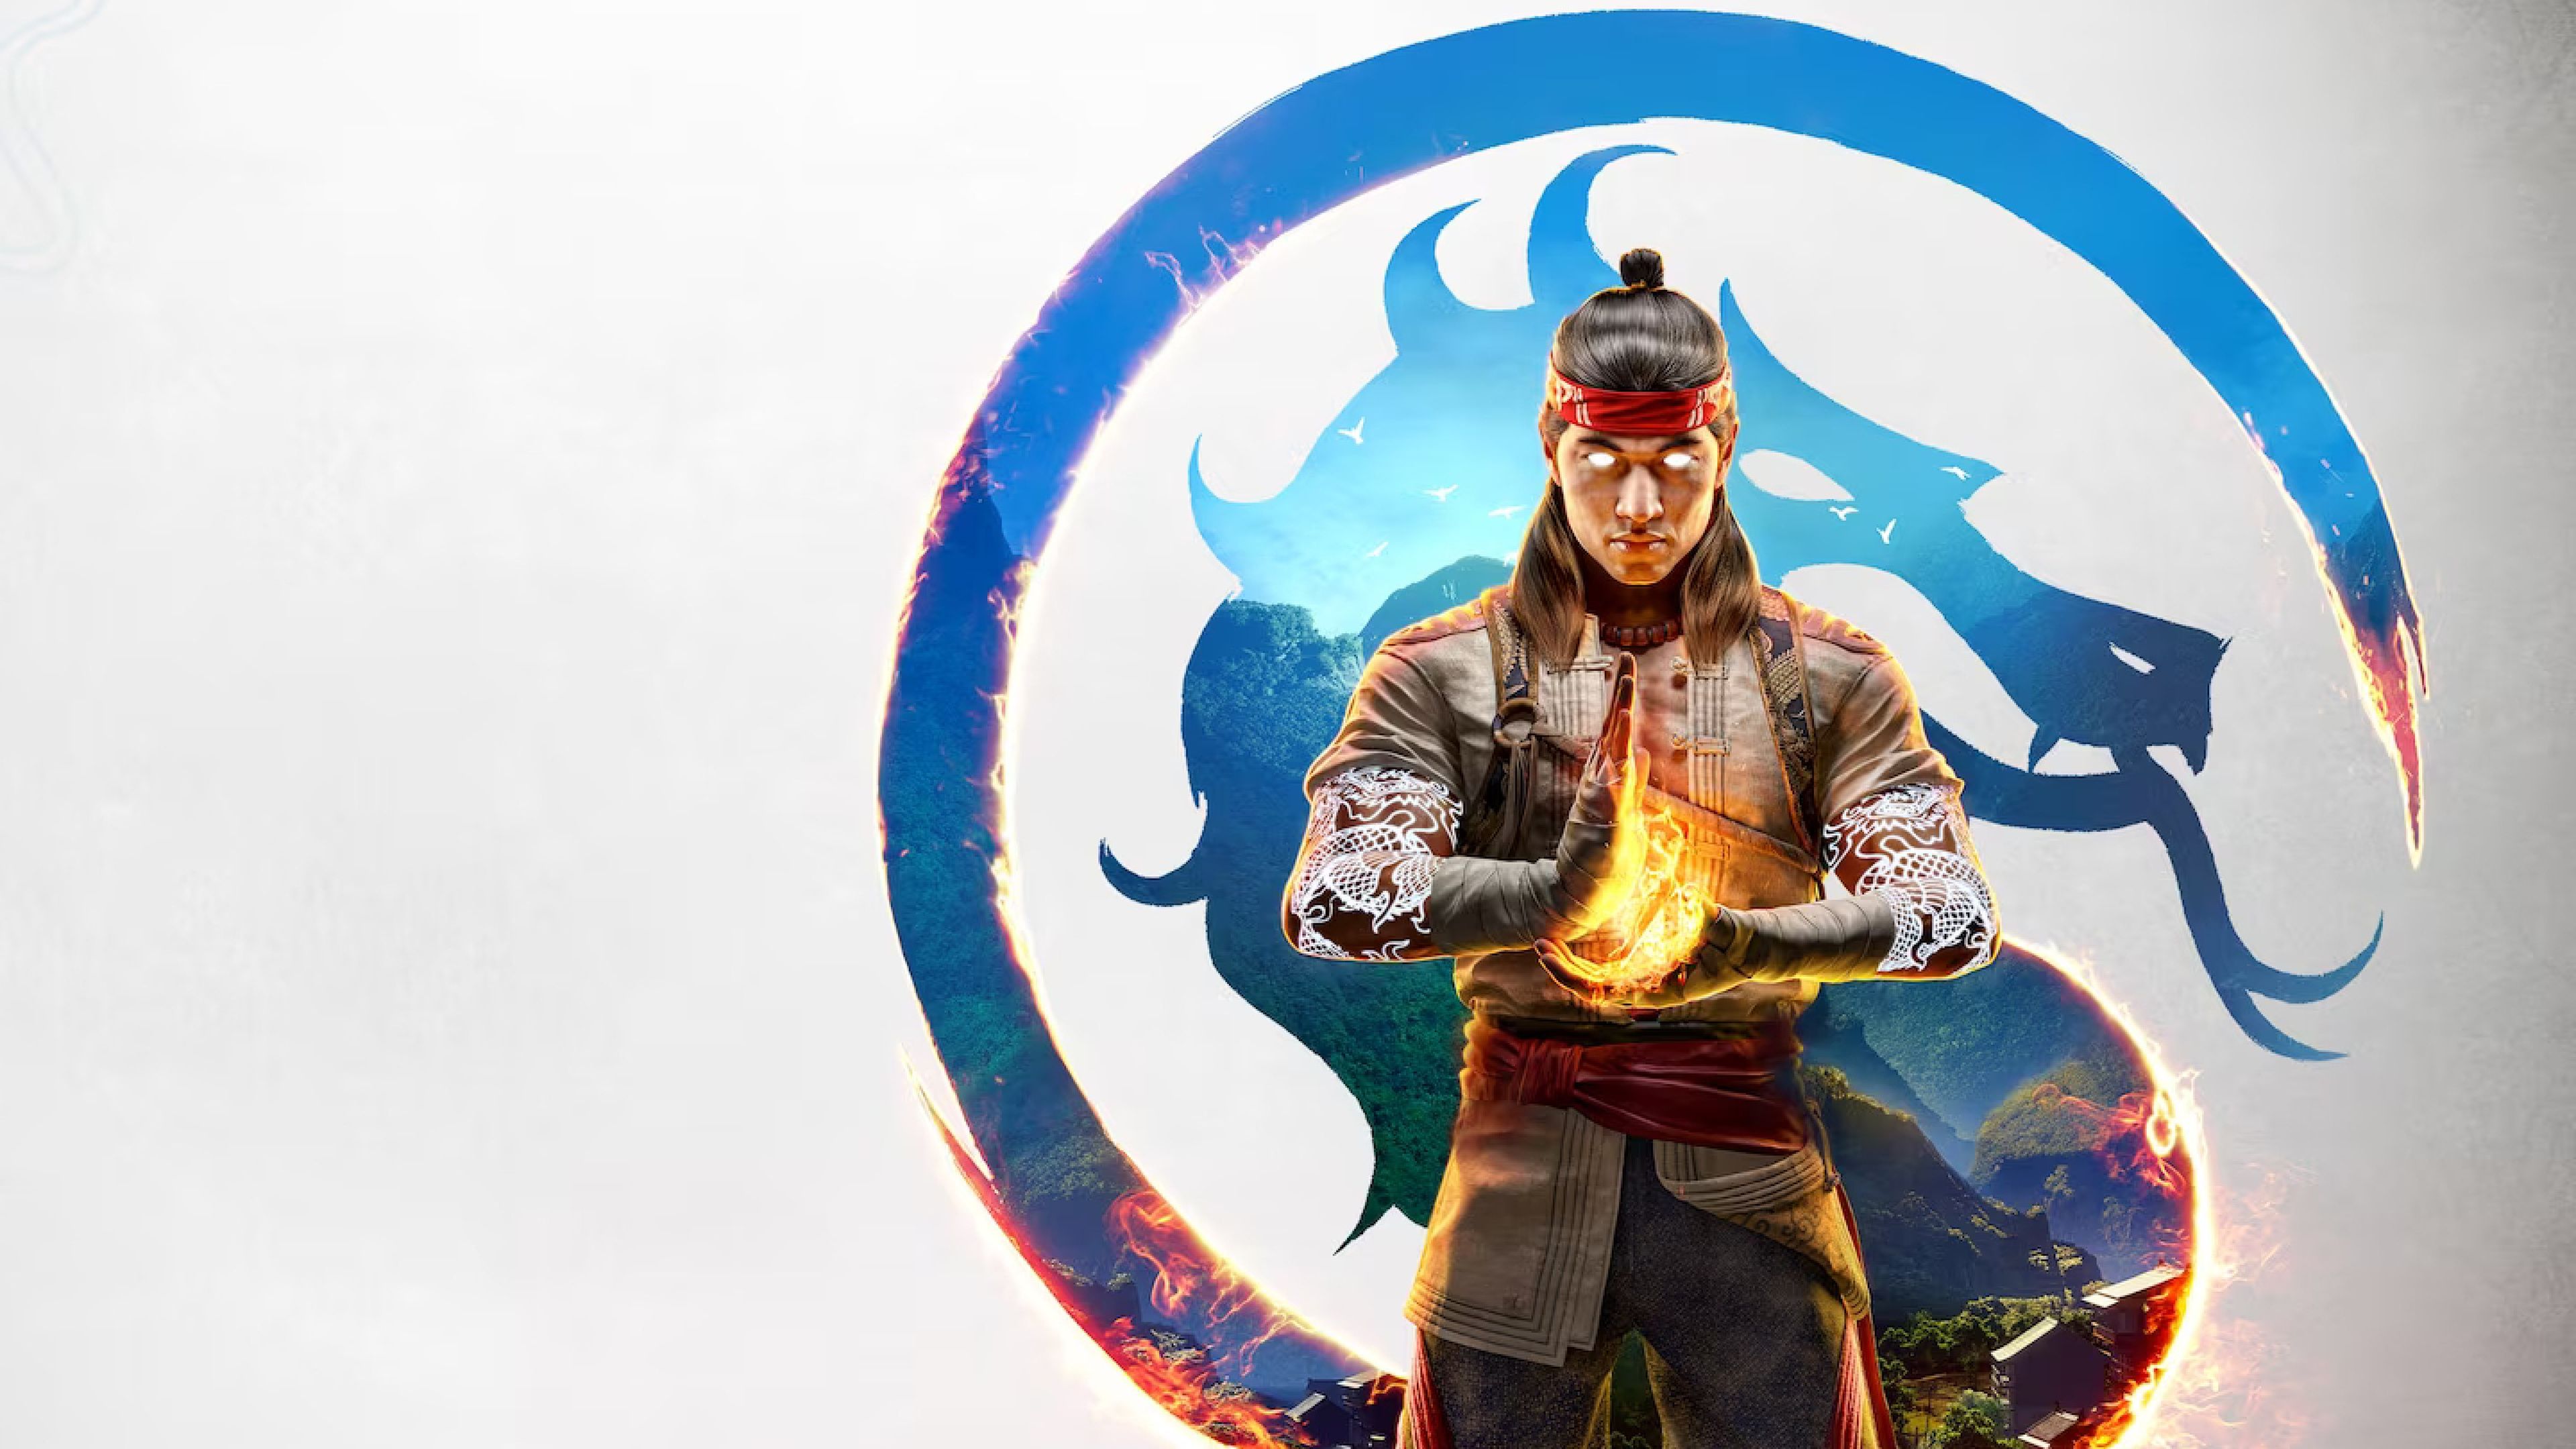 Mortal Kombat 1 llegará en septiembre a PC, PS5, Xbox Series X/S y